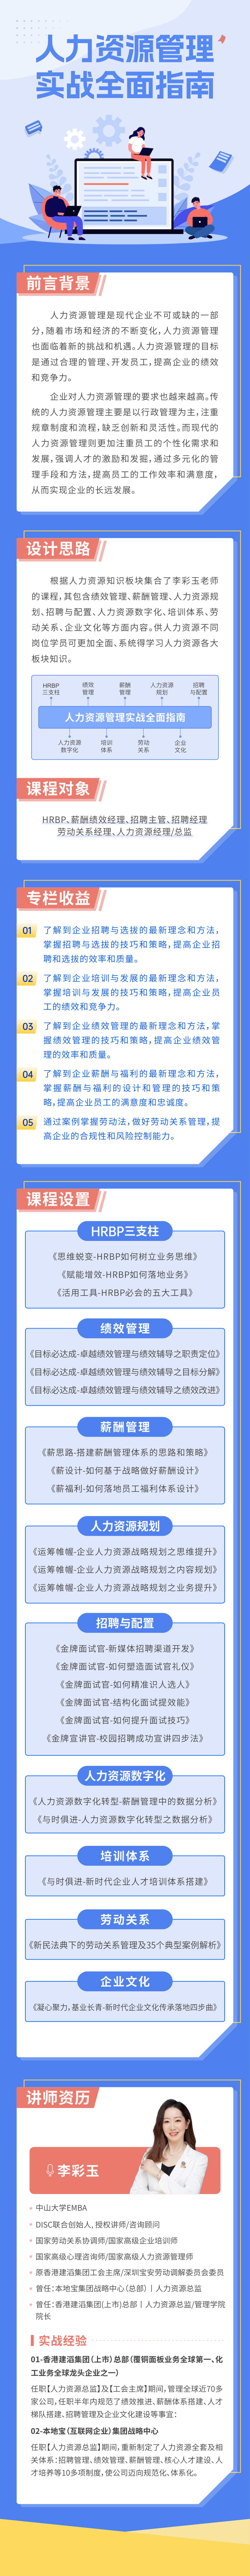 https://hs-1253359580.cos.ap-guangzhou.myqcloud.com/newhdp/live_cover/12252/f55590074c08542b0a13acfa6dcfef24.png